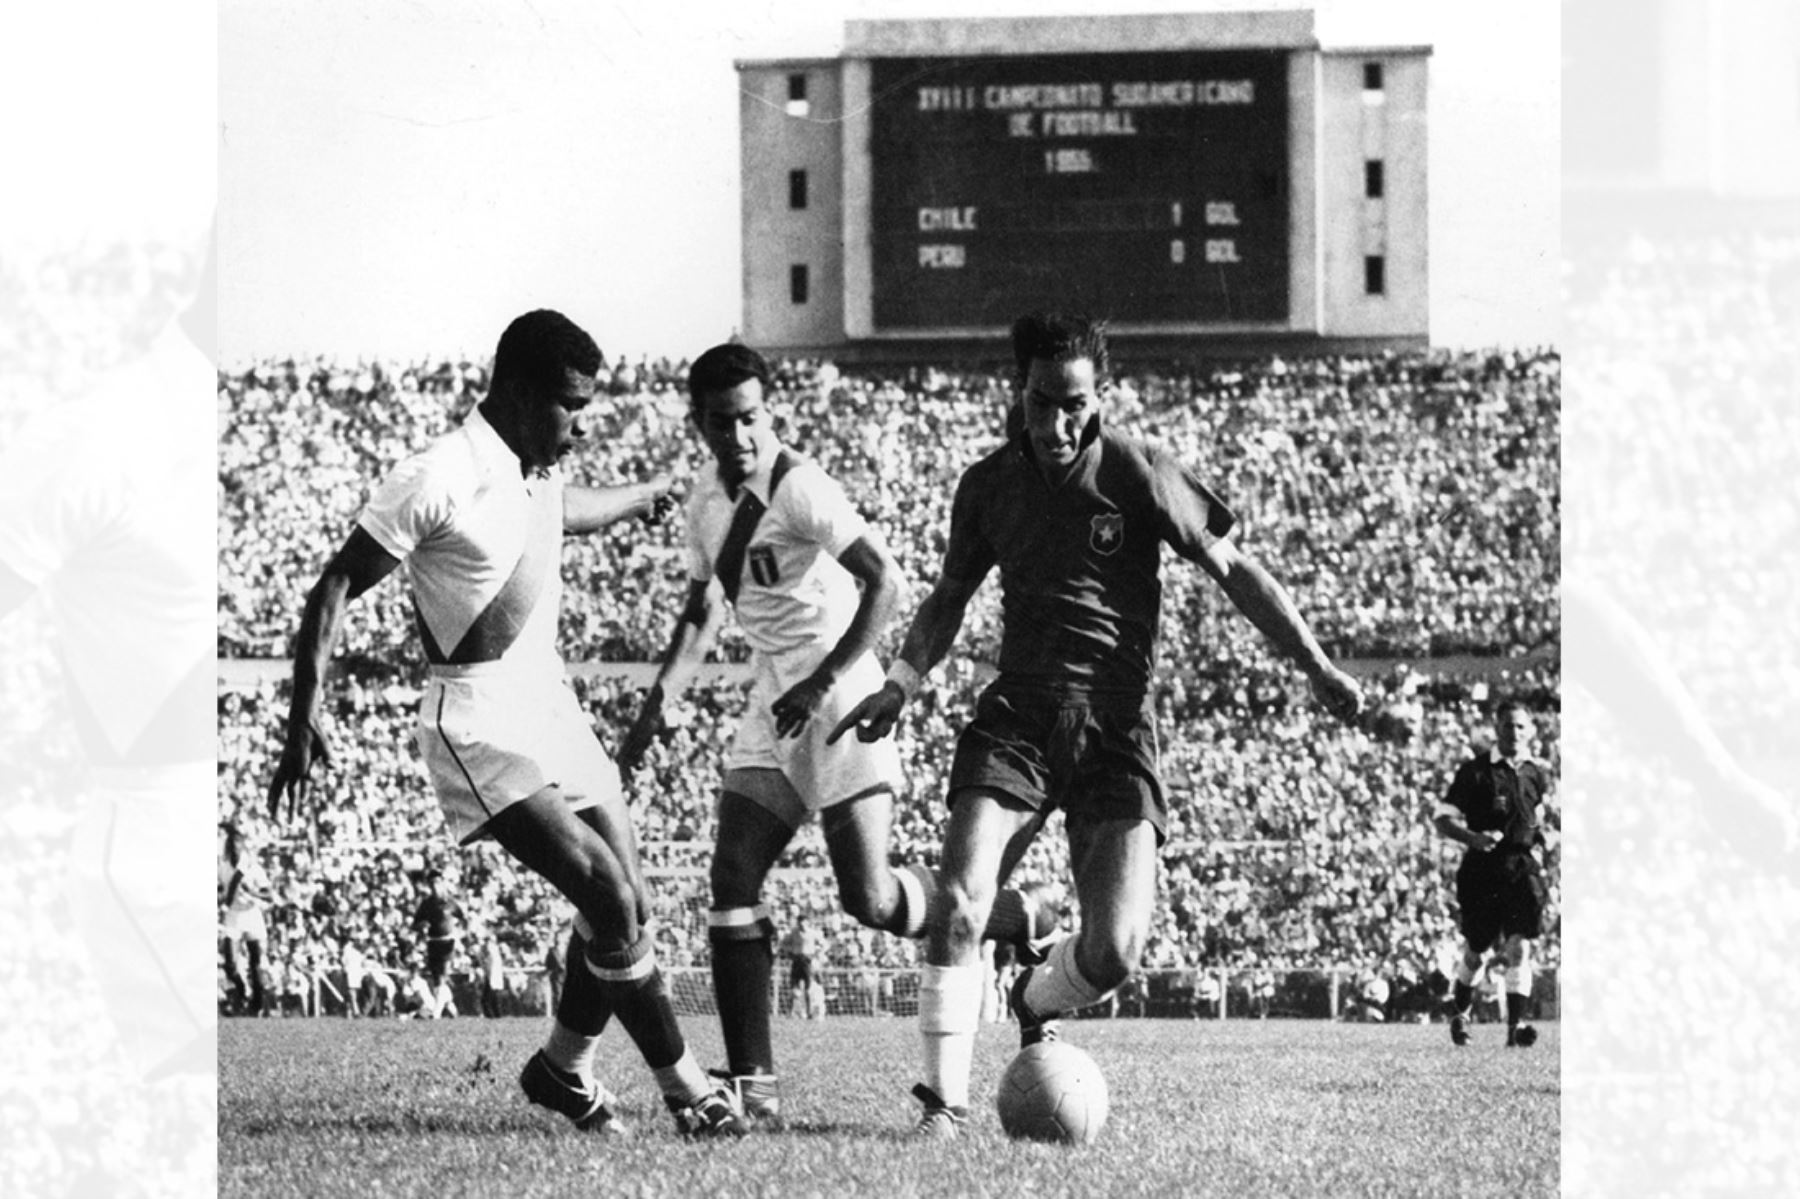 Santiago de Chile - 1955 / El futbolista chileno  Jorge Robledo enfrenta la marca de los peruanos Delgado y Garrido durante un encuentro por el campeonato sudamericano de fútbol - Chile 1955. Foto: AFP